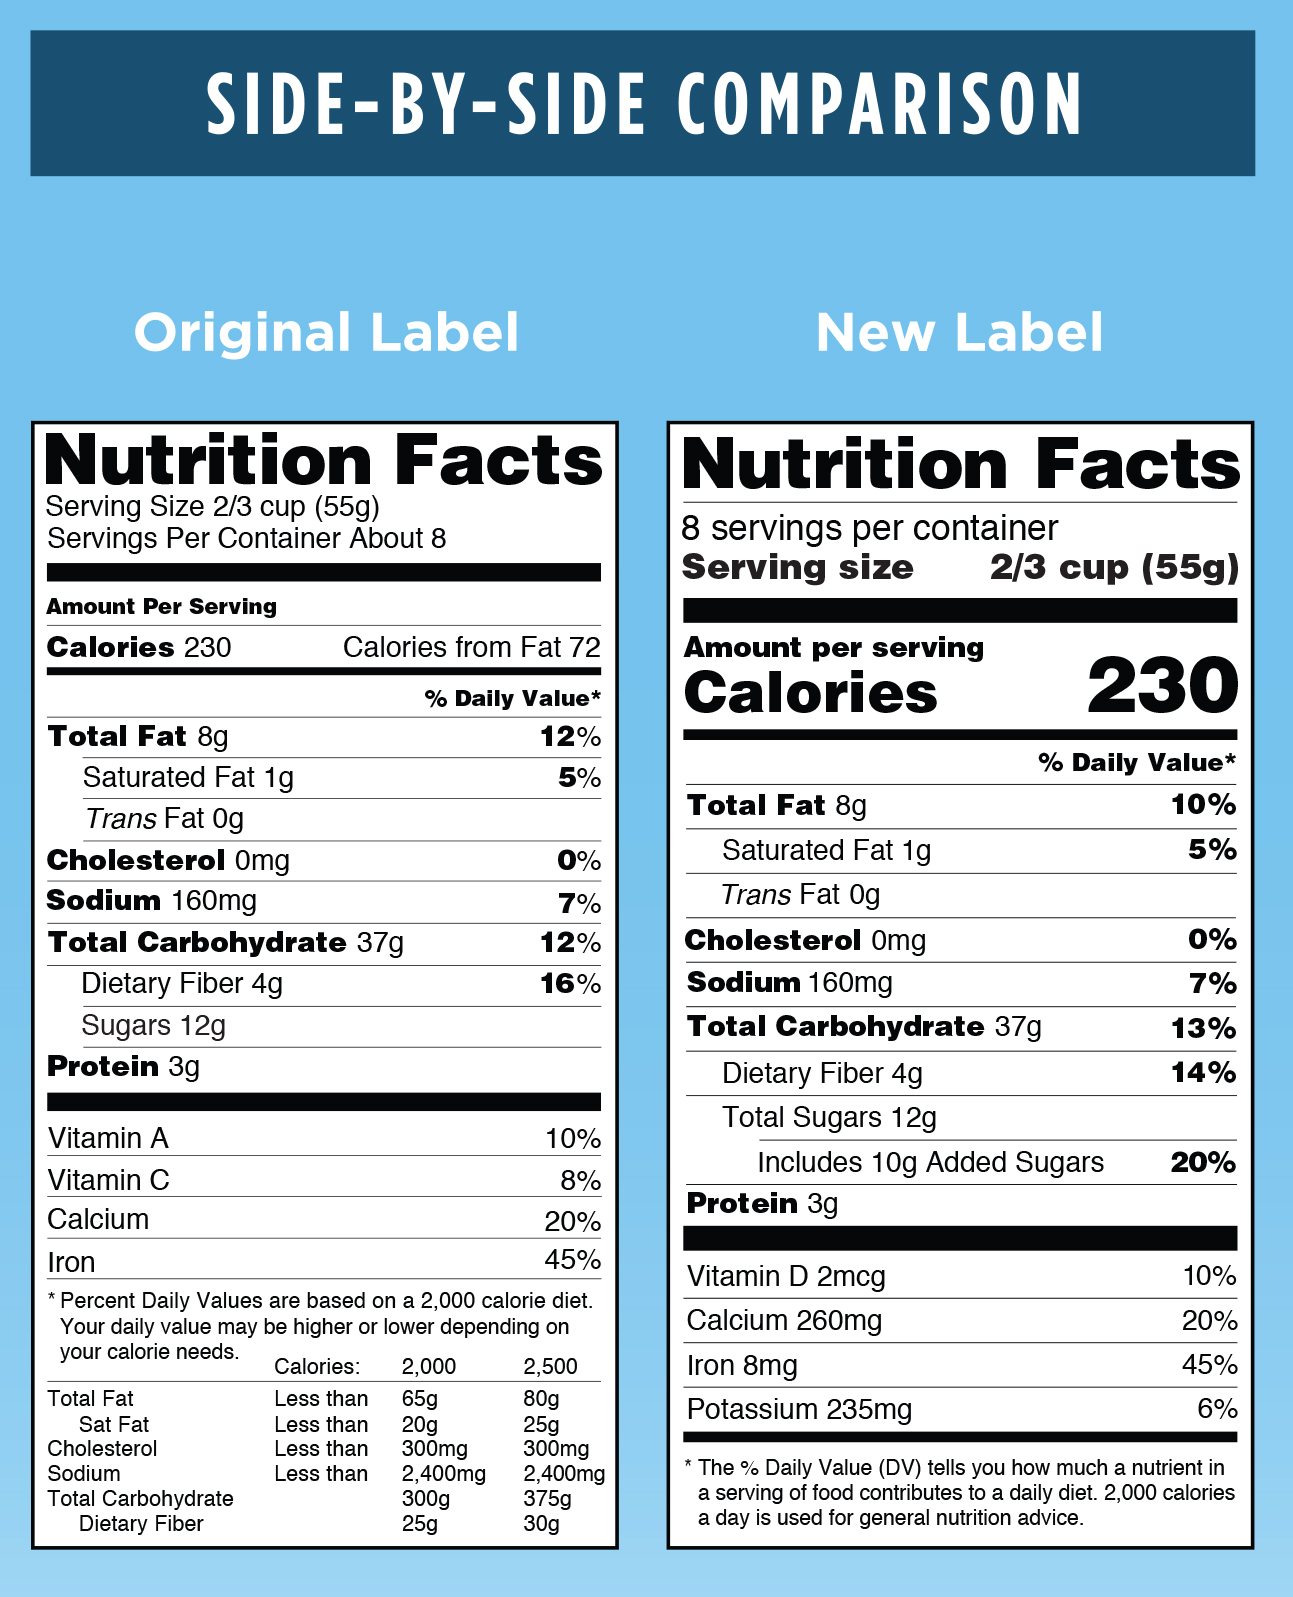 FDA Graphic: Original versus New Label - Side-by-Side Comparison. For complete description call the FDA at 1-888-723-3366. Courtesy: FDA